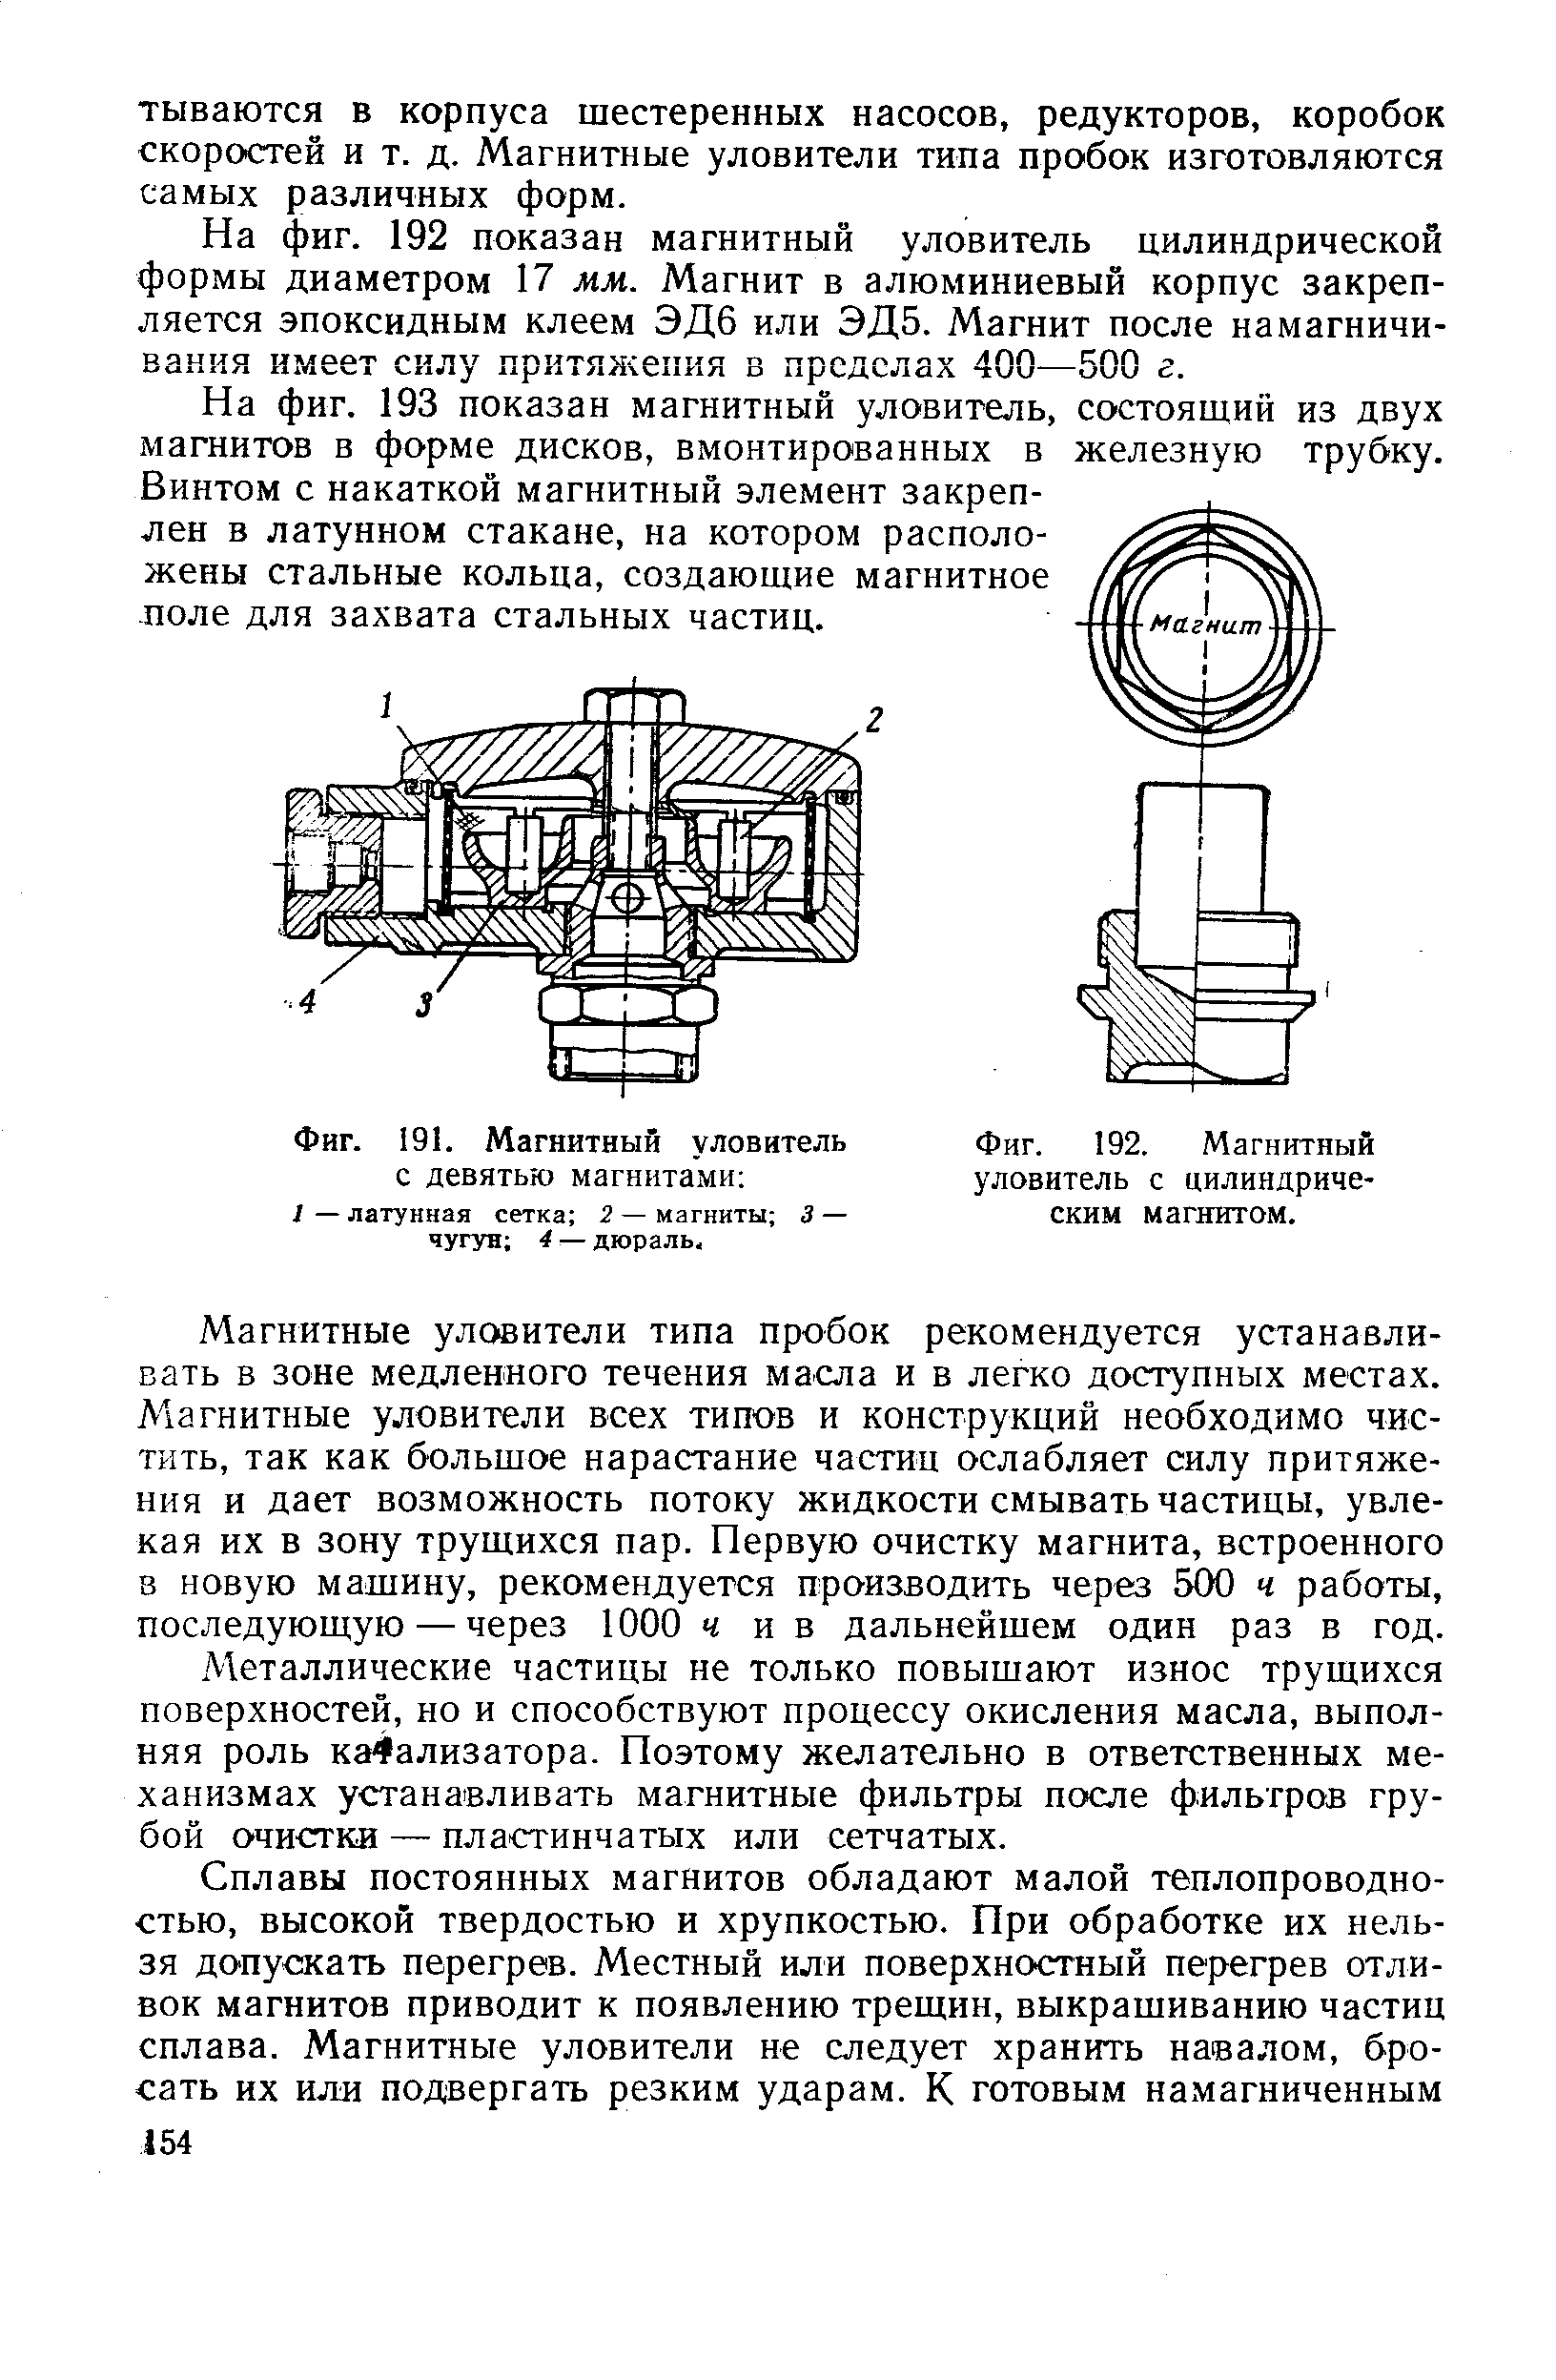 Фиг. 192. Магнитный уловитель с цилиндрическим магнитом.
